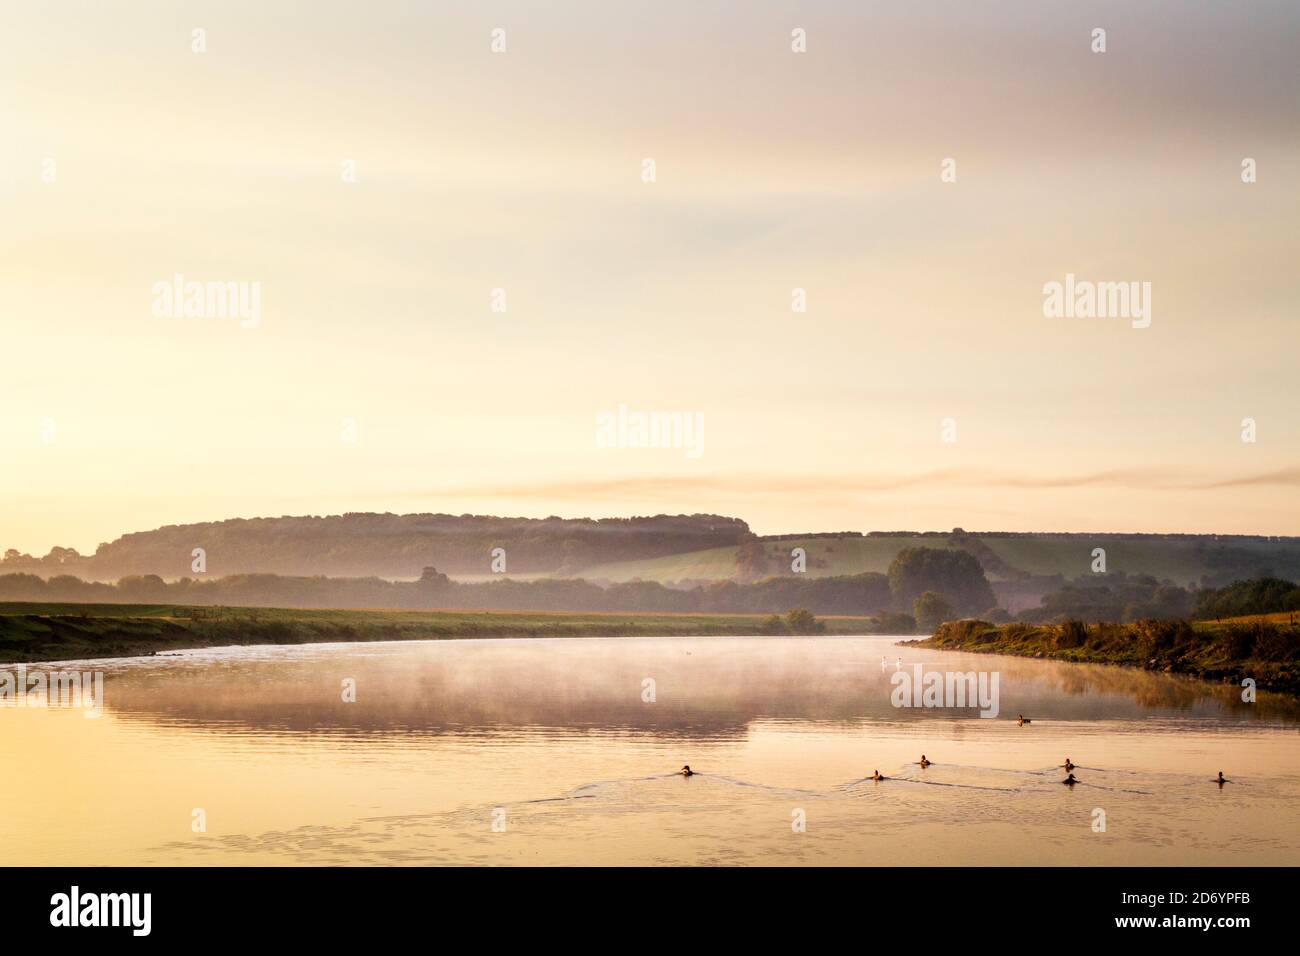 Scène de campagne anglaise en automne. Brume et oiseaux sur la rivière Trent juste après l'aube, Stoke Bardolph, Notinghamshire, Angleterre, Royaume-Uni Banque D'Images